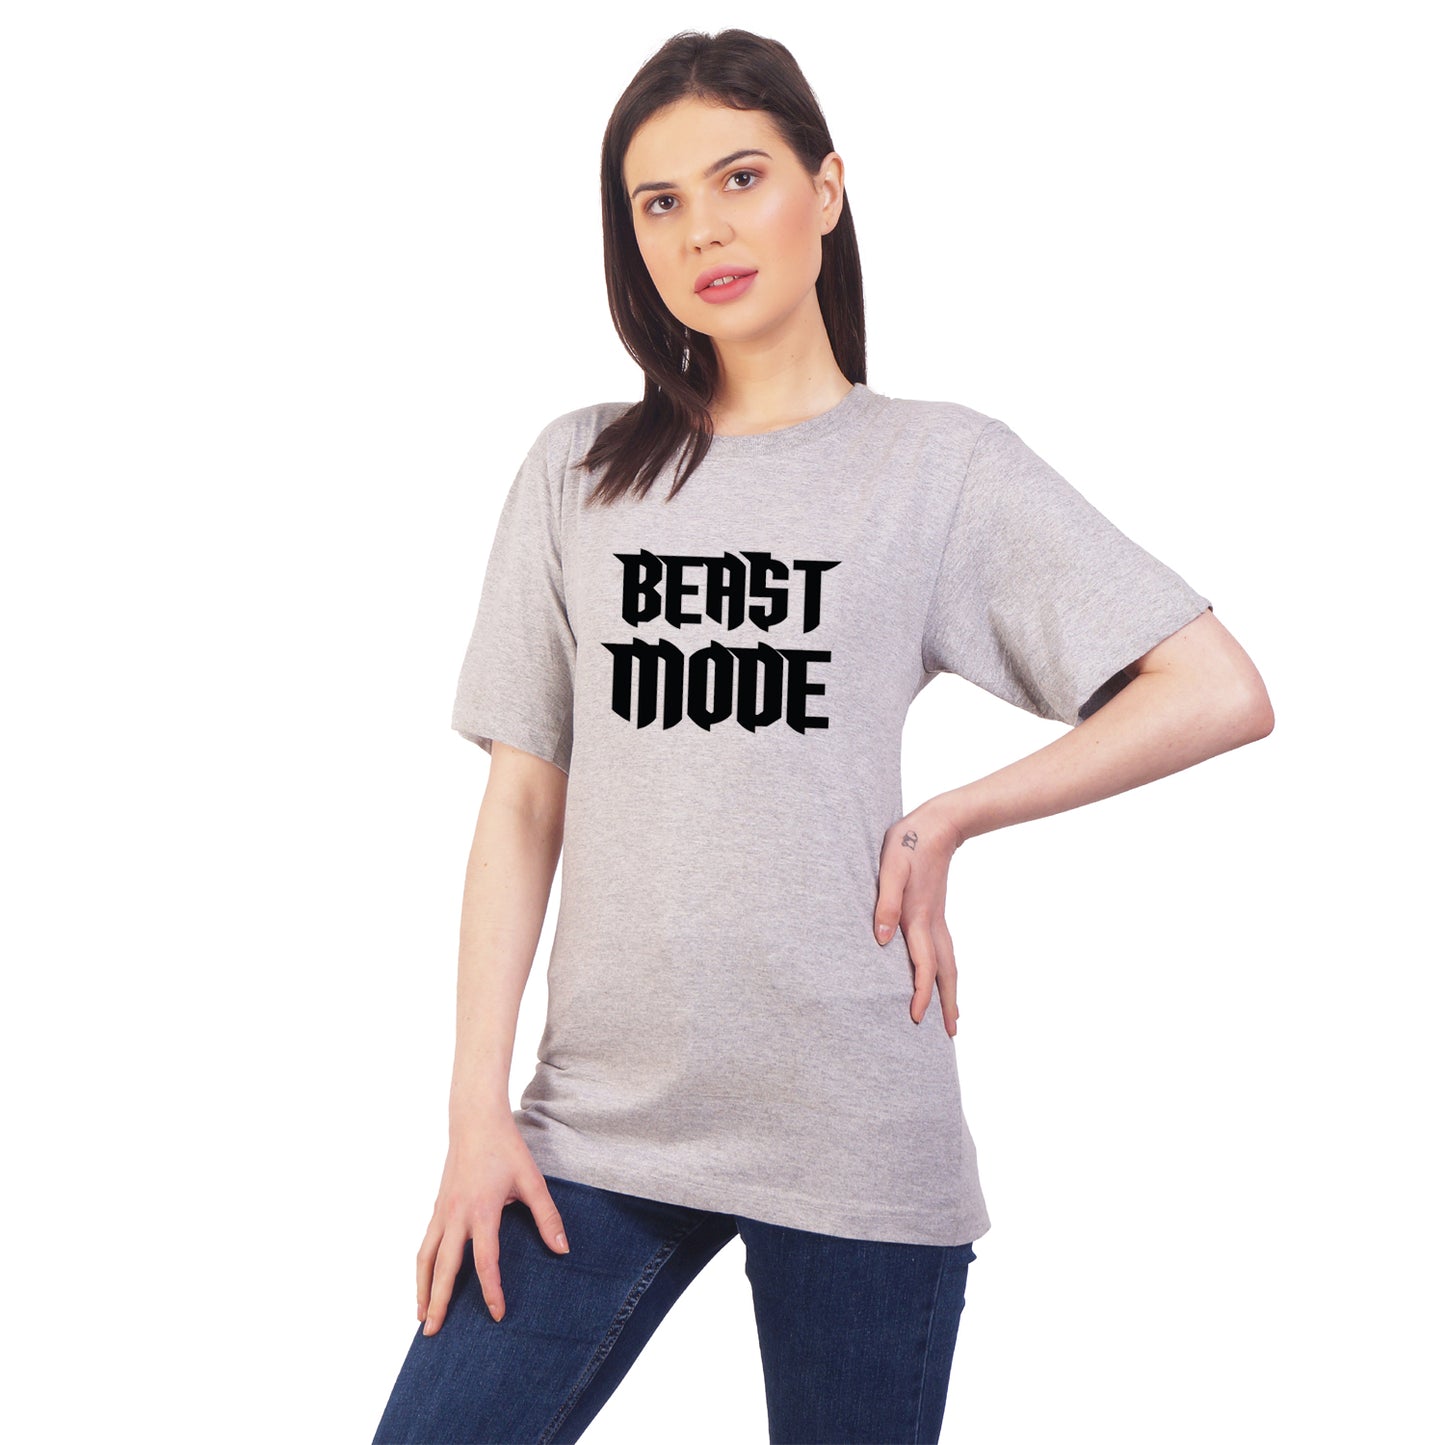 Beast Mode cotton T-shirt | T022